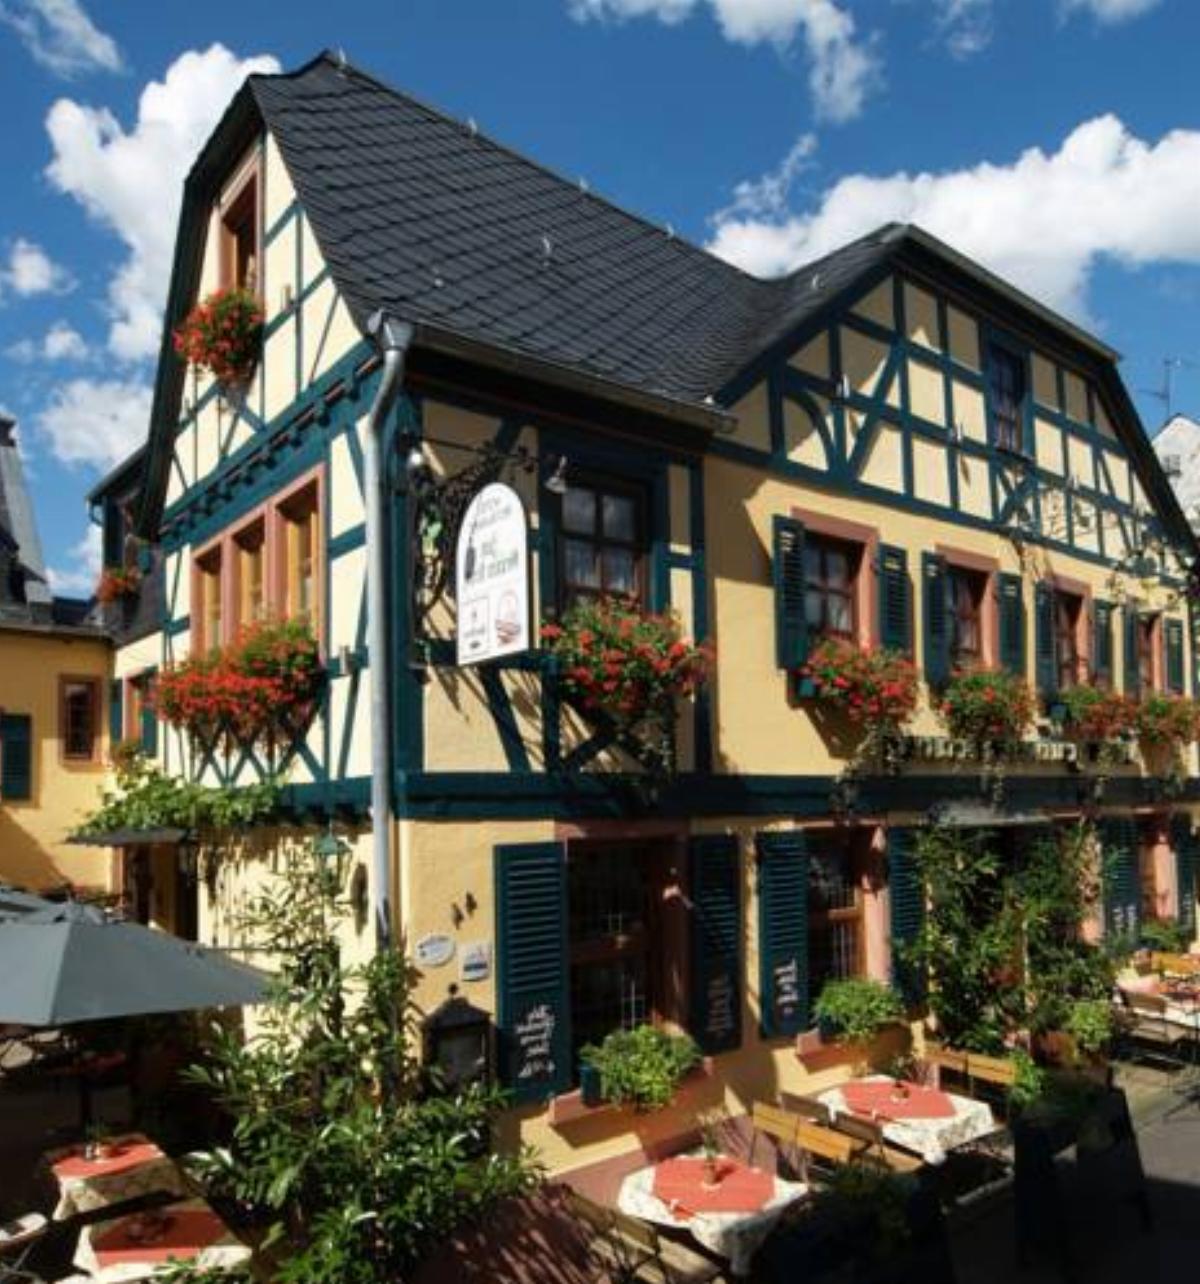 Historisches Weinhotel Zum Grünen Kranz